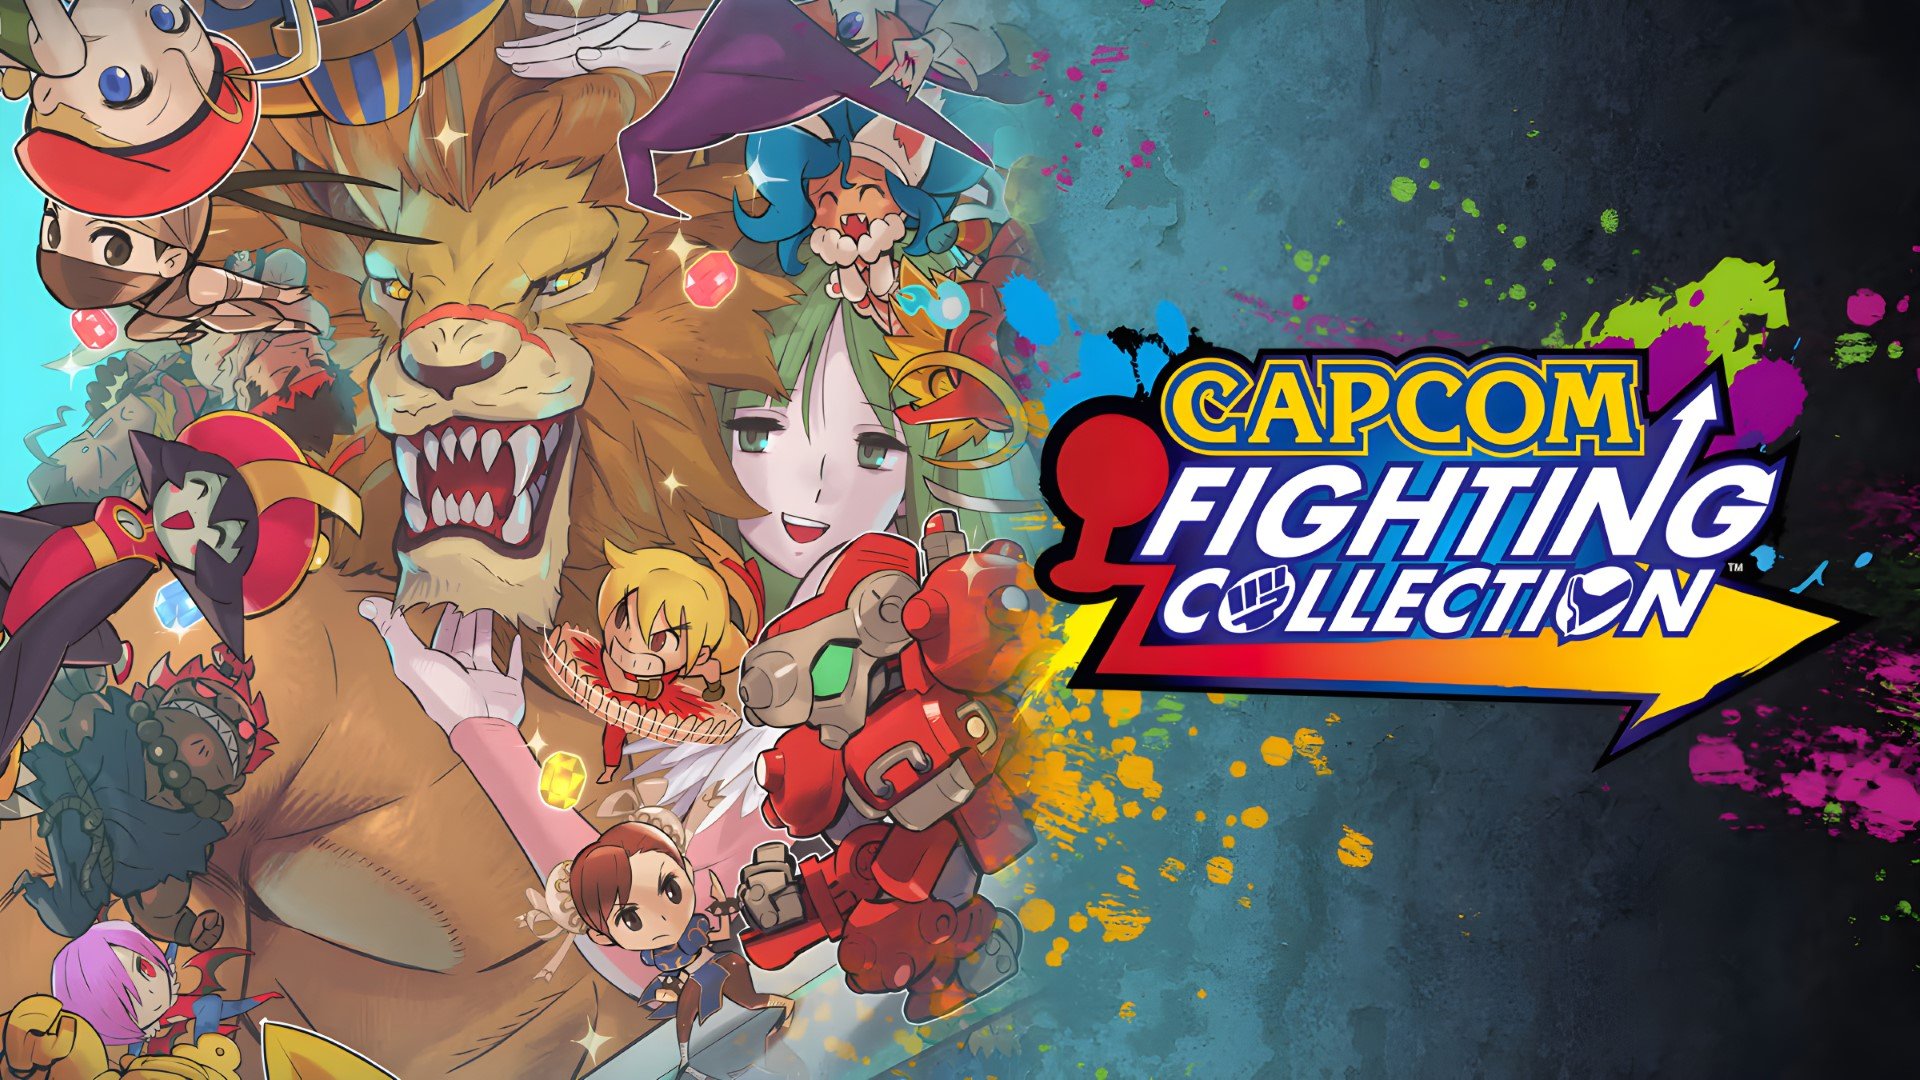 Humble Bundle and Capcom team up to offer Humble Capcom Super